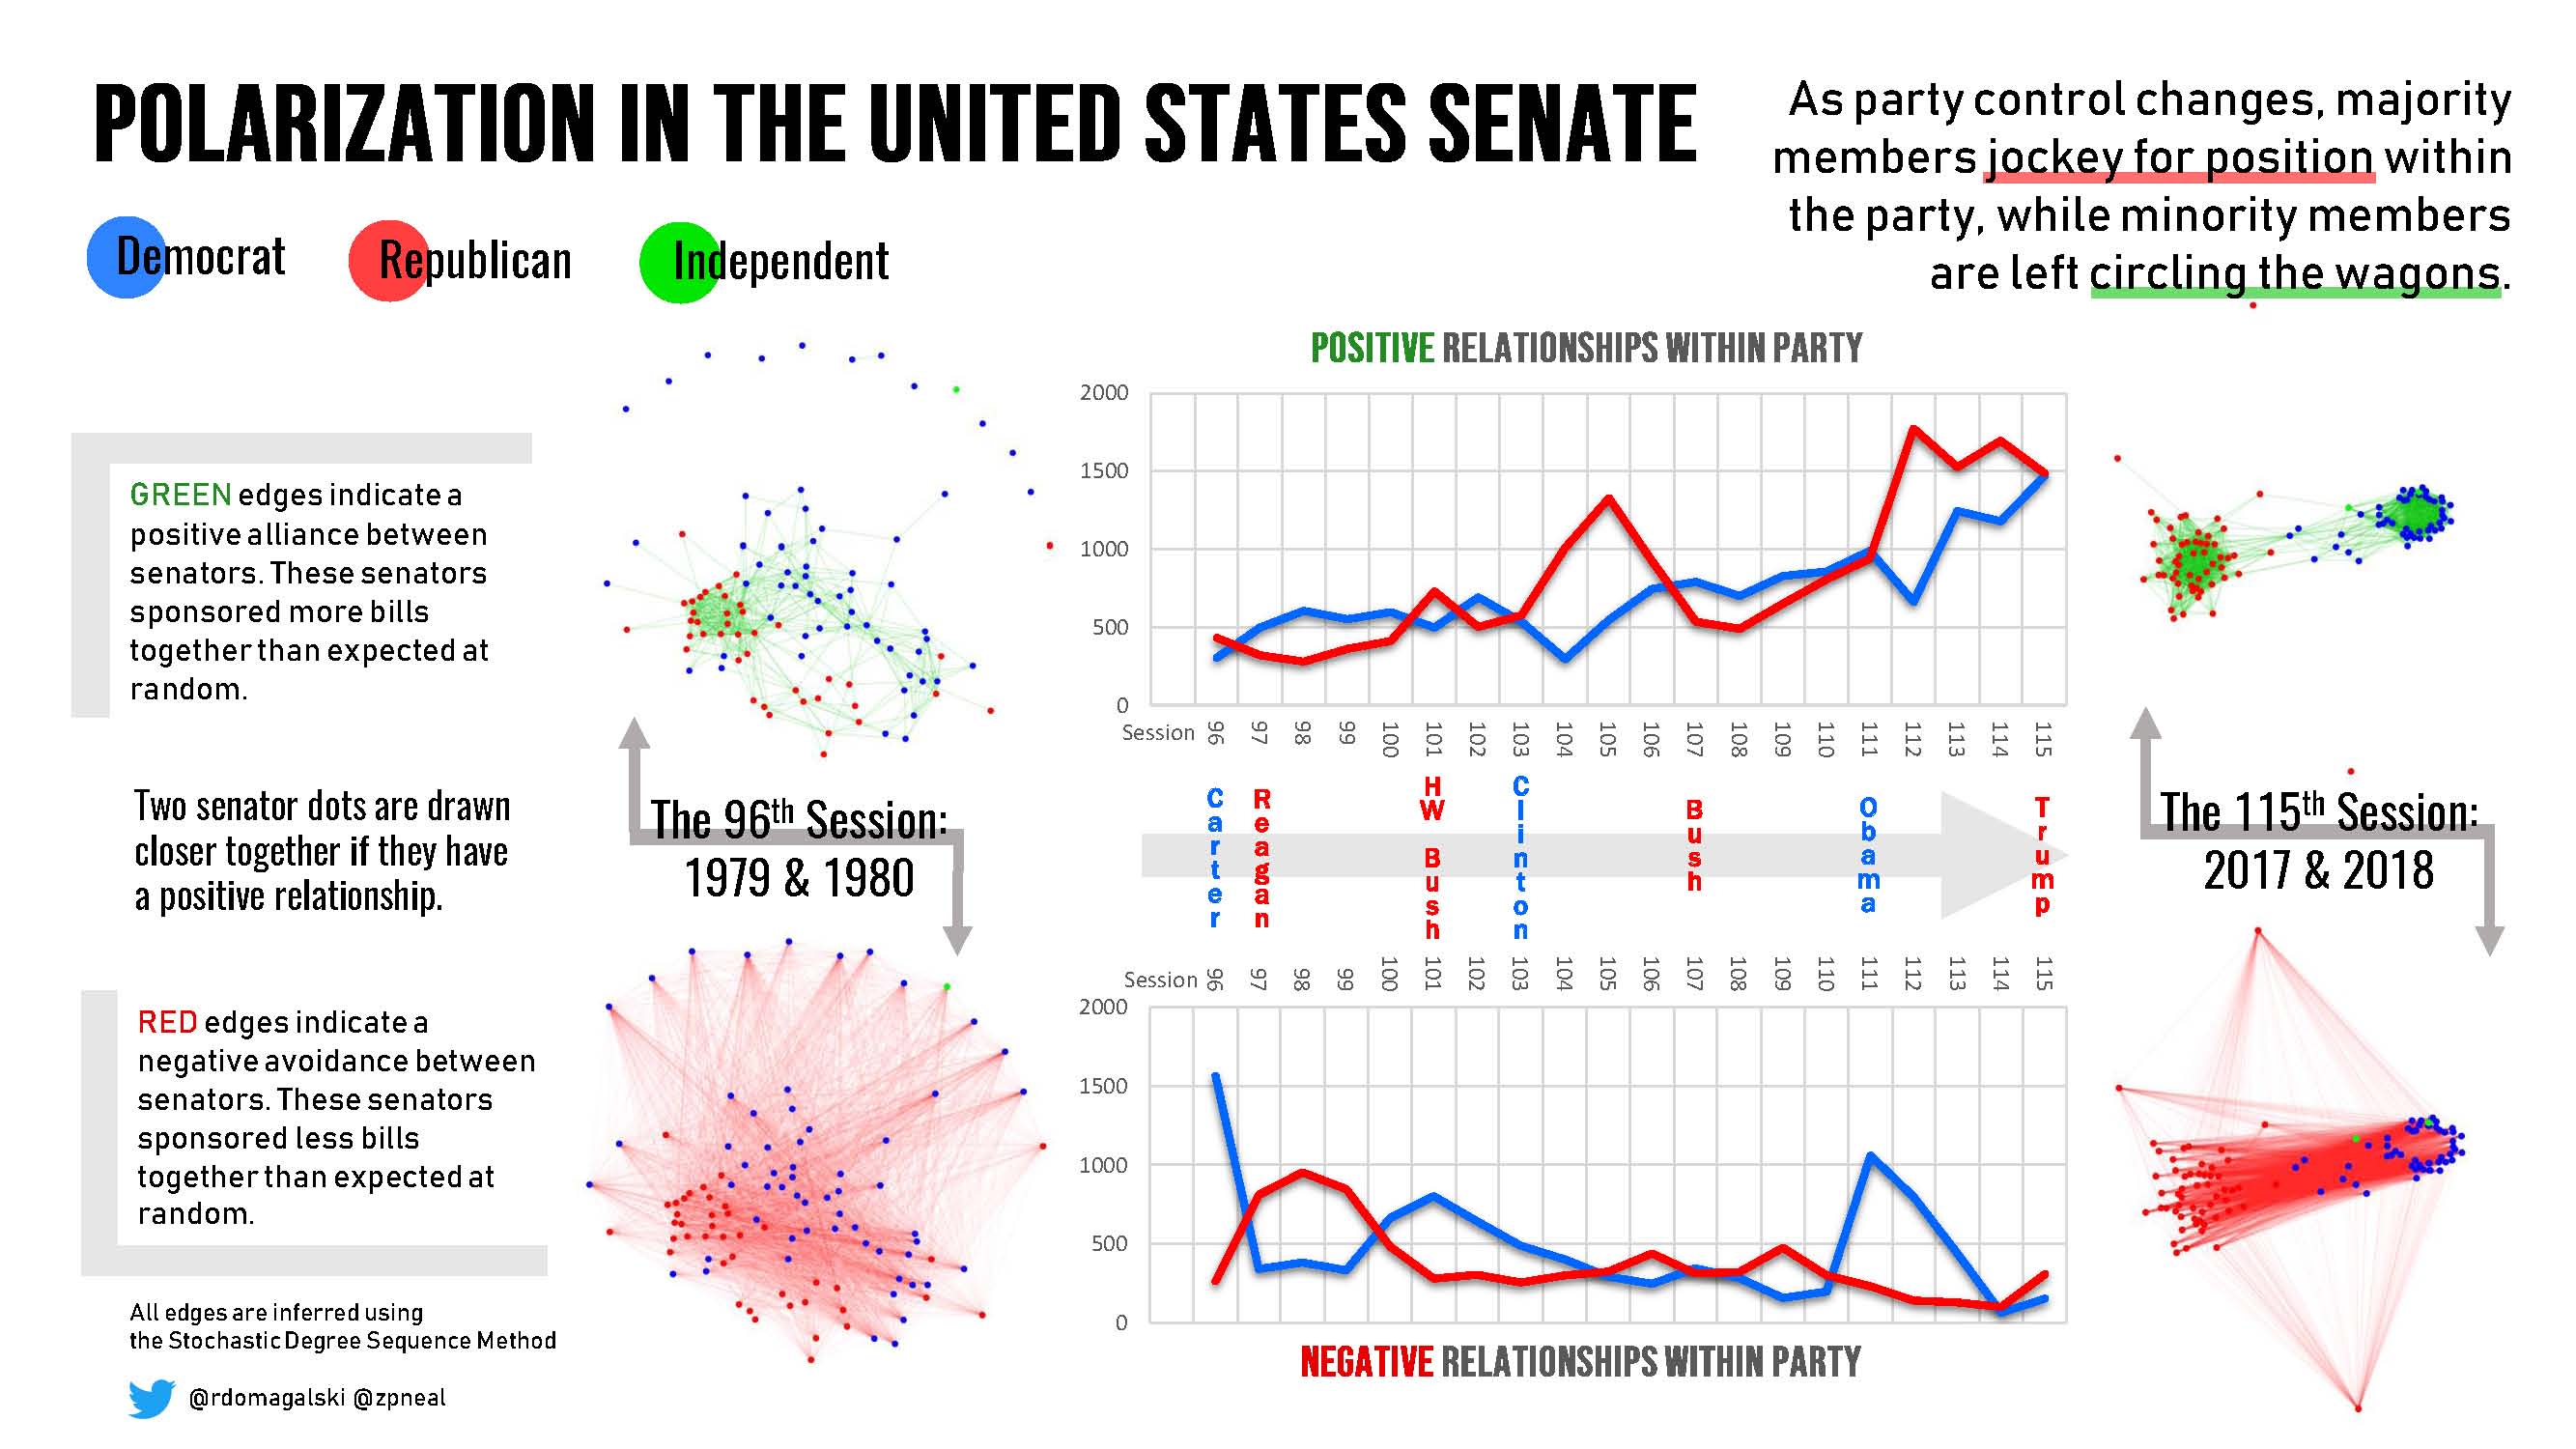 H. Polarization in the US Senate